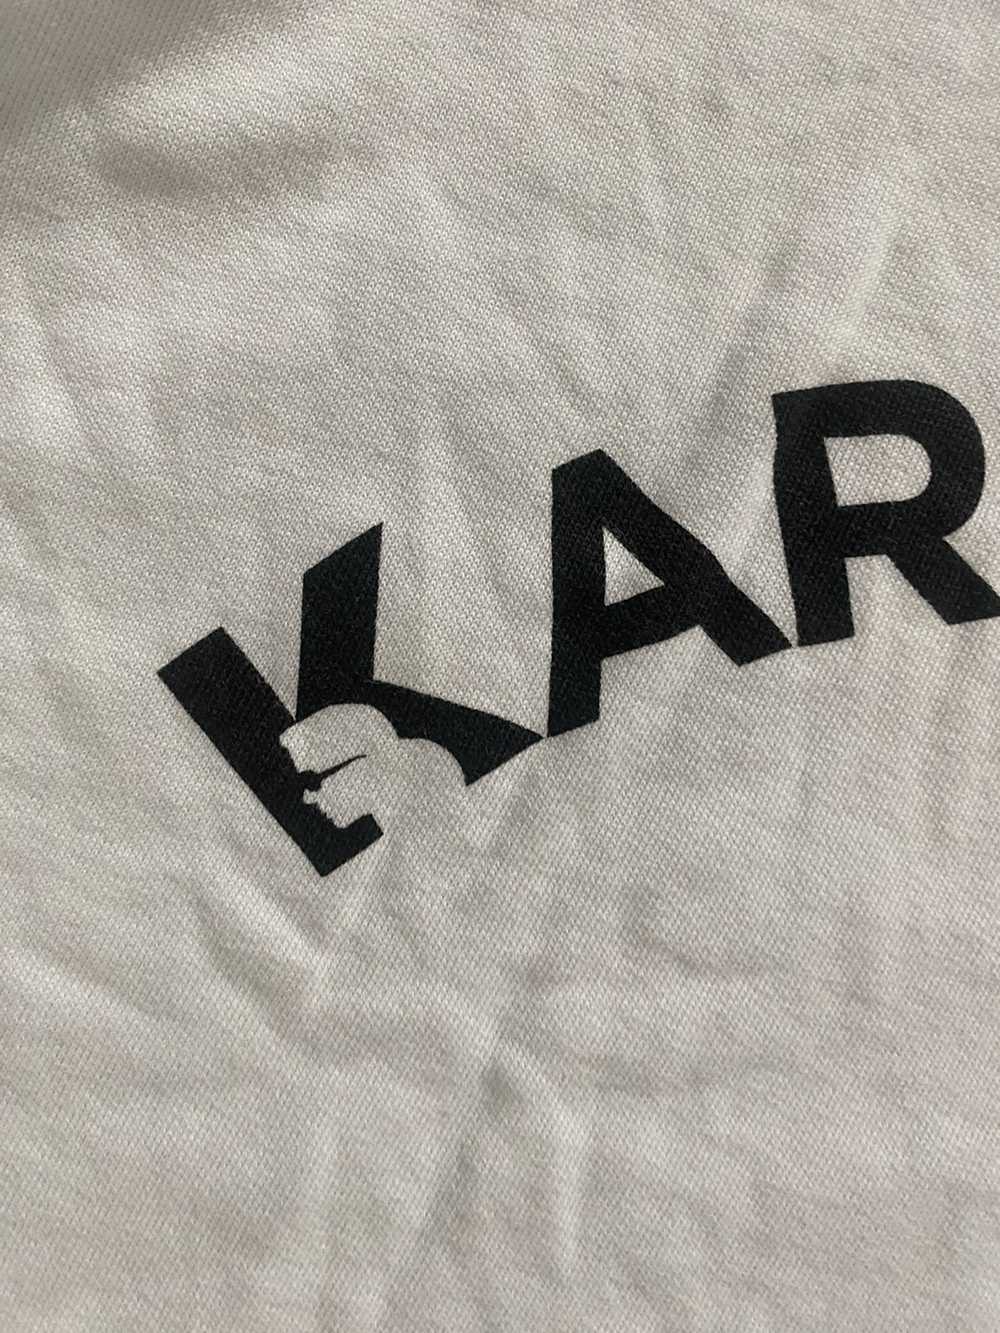 Karl Lagerfeld × Streetwear Karl legerfeld, M , w… - image 6